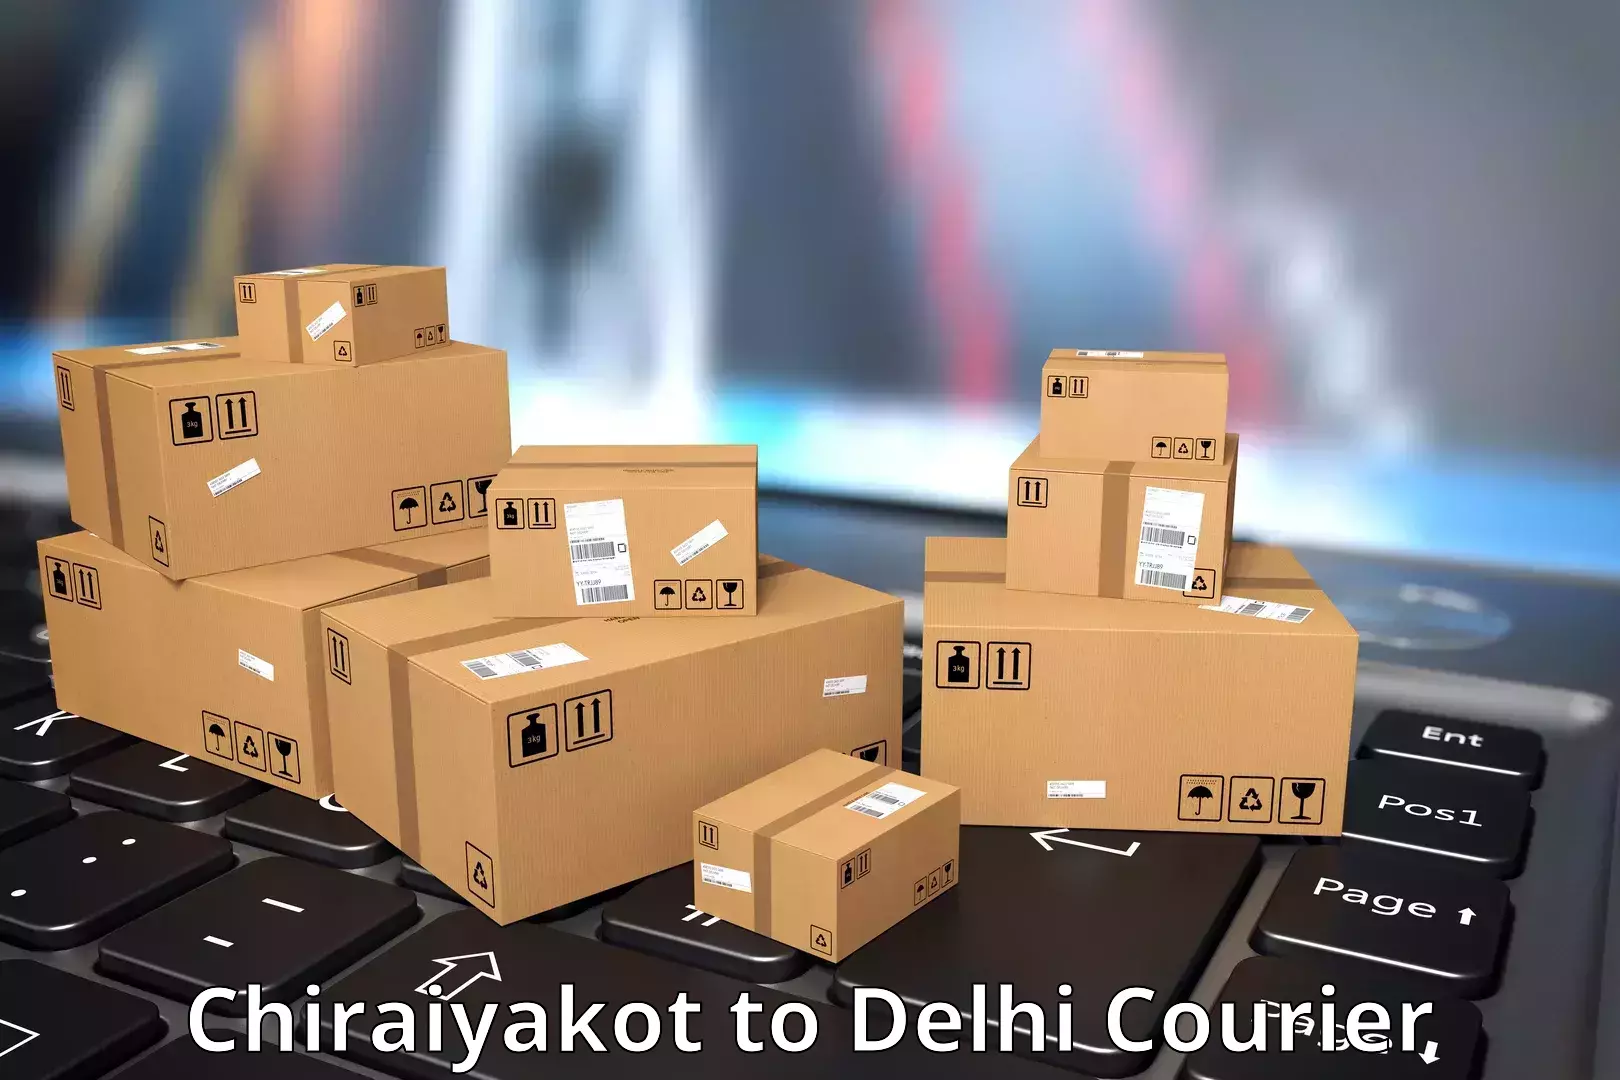 Innovative shipping solutions Chiraiyakot to Lodhi Road